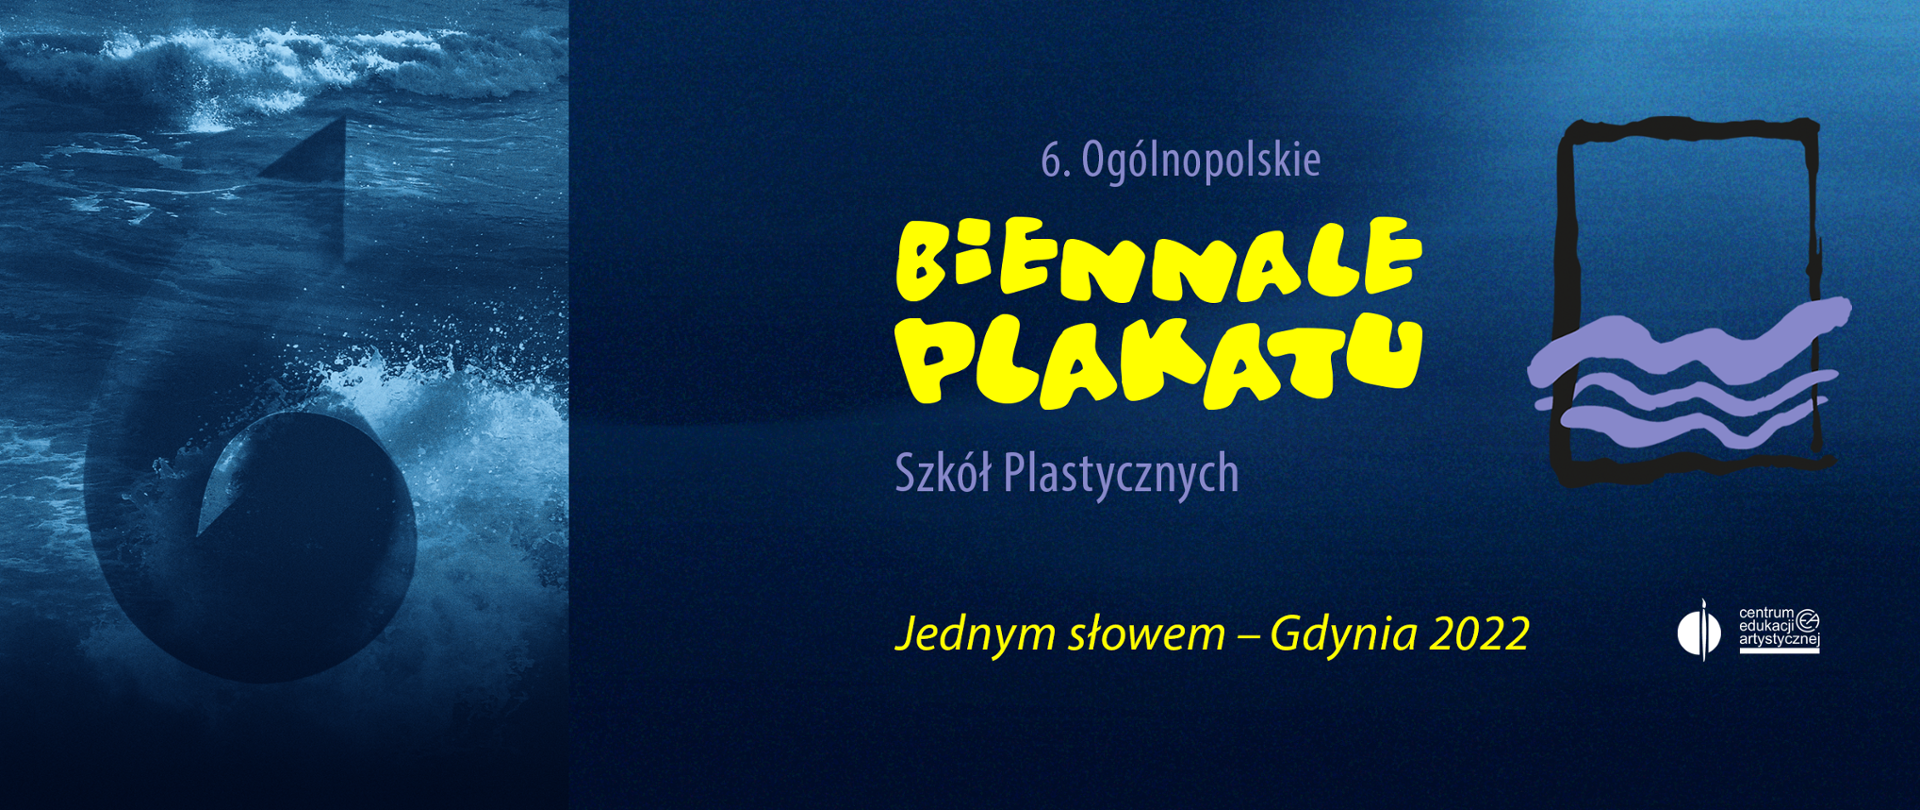 Z lewej strony stylizowana na muszlę cyfra 6 na tle spienionych fal morza, w centrum napis 6. Ogólnopolskie Biennale Plakatu Szkół Plastycznych Jednym słowem - Gdynia 2022